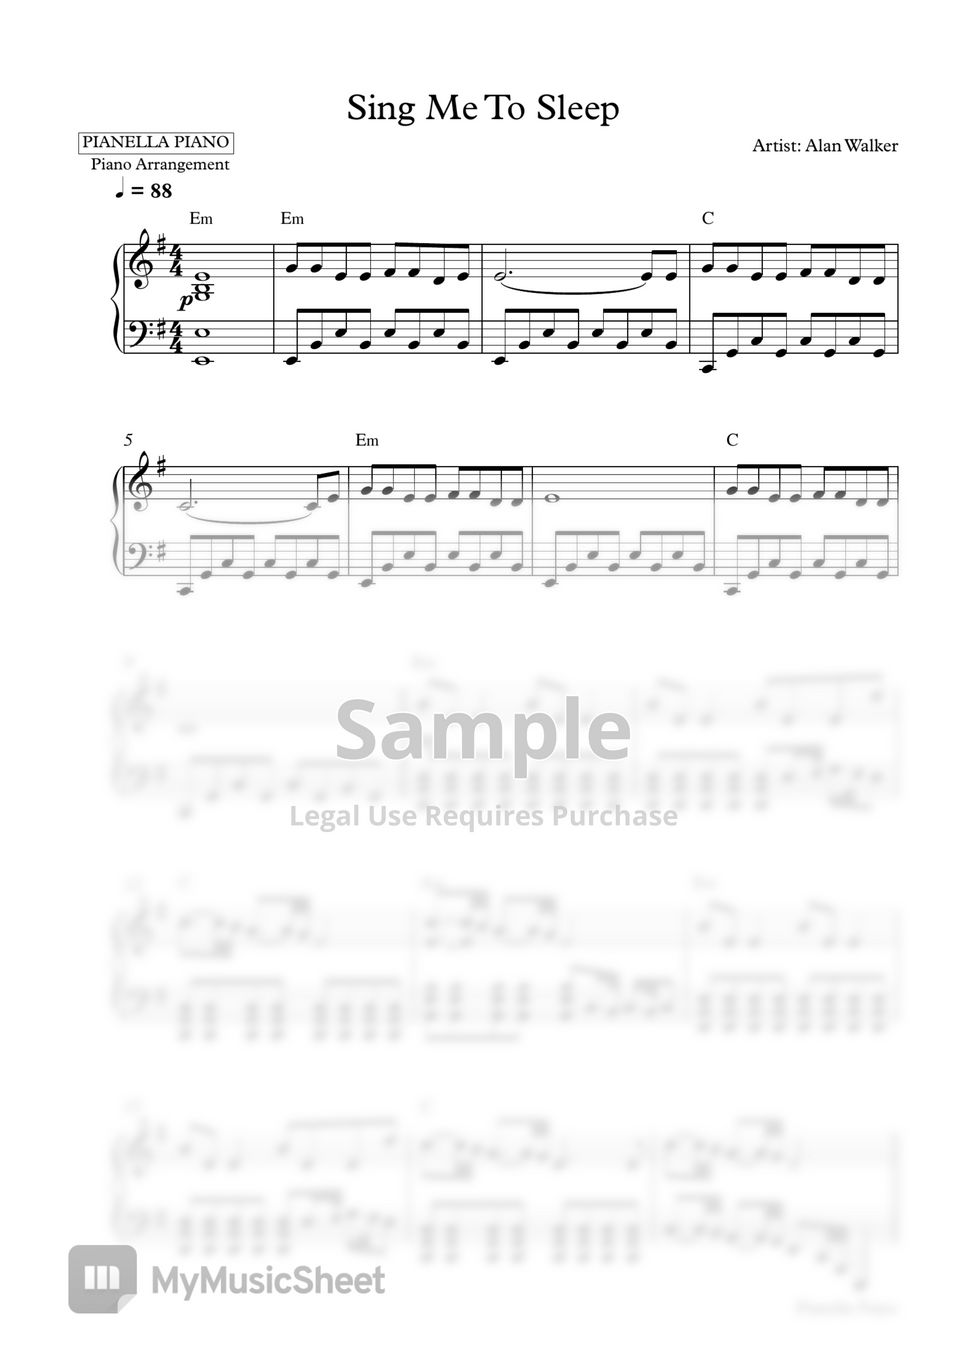 Alan Walker - Sing Me To Sleep (Piano Sheet) by Pianella Piano